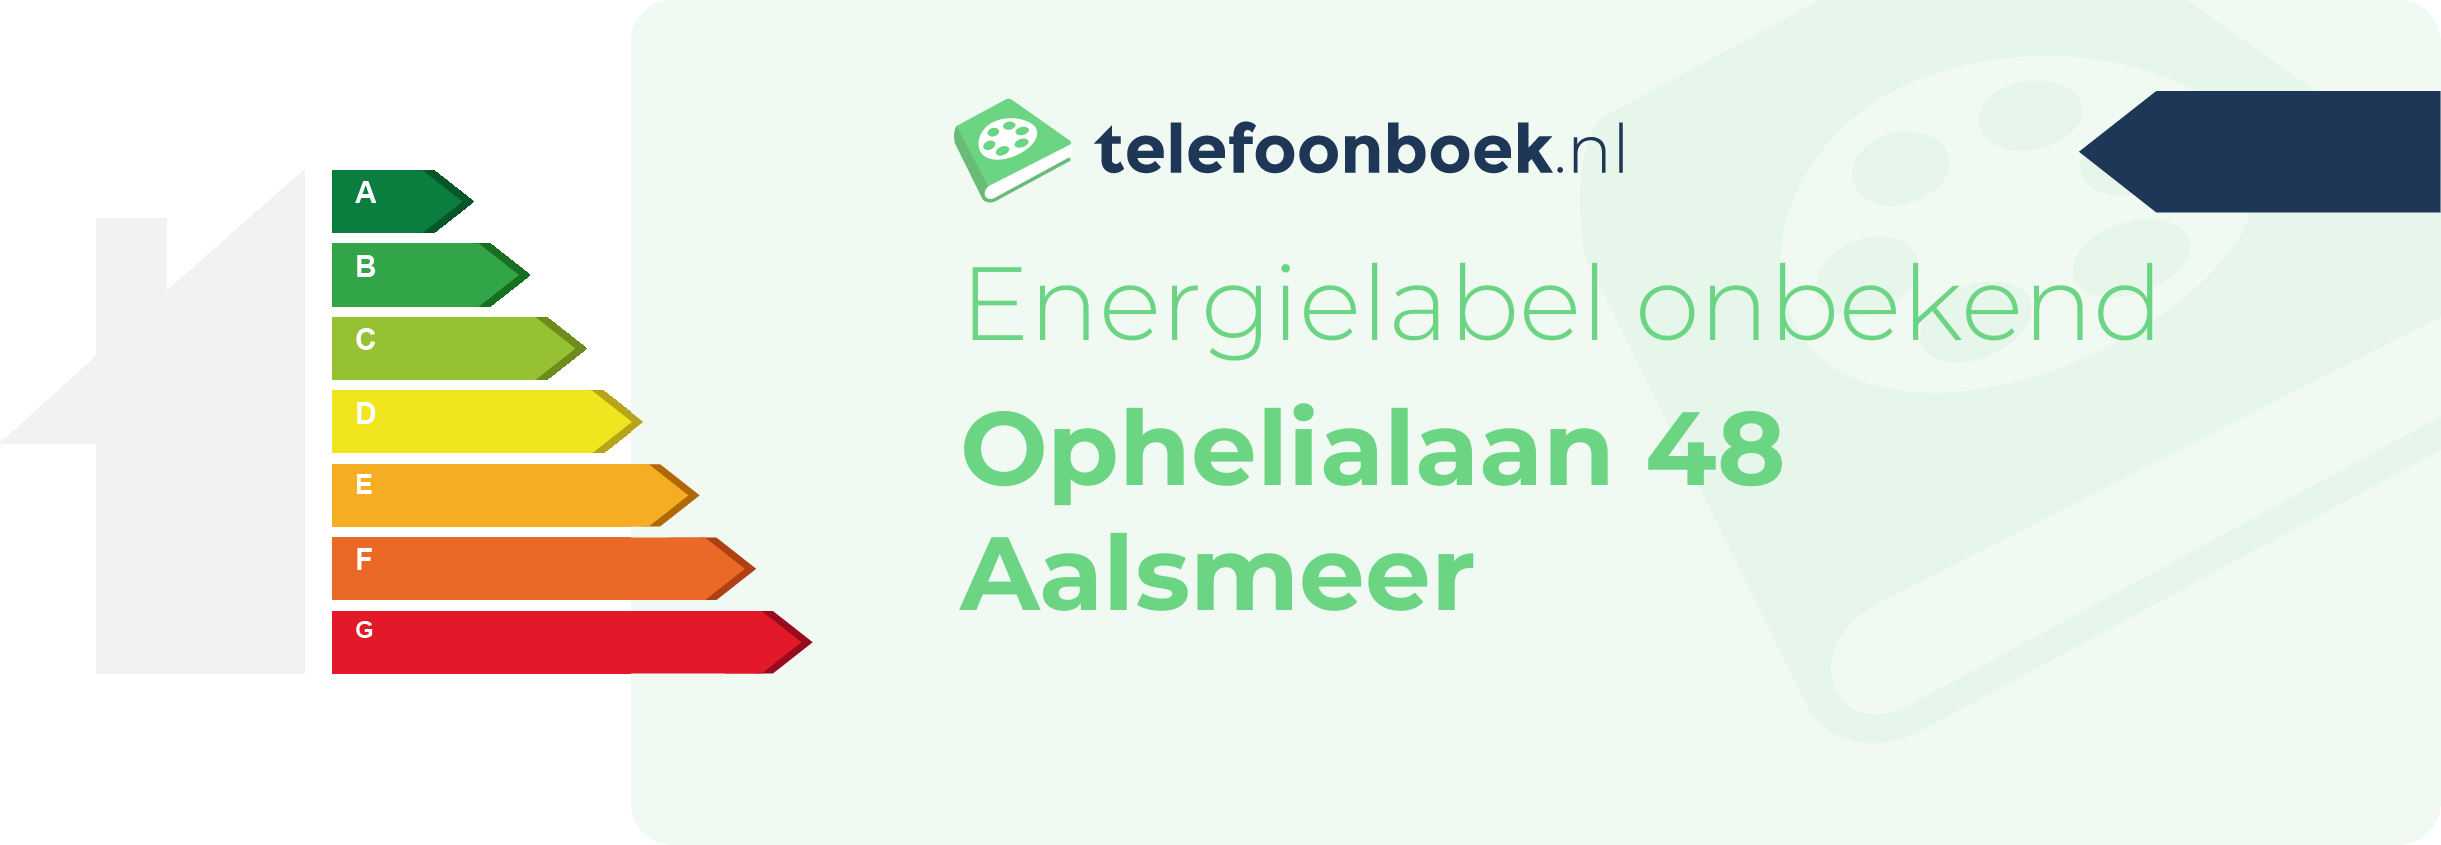 Energielabel Ophelialaan 48 Aalsmeer